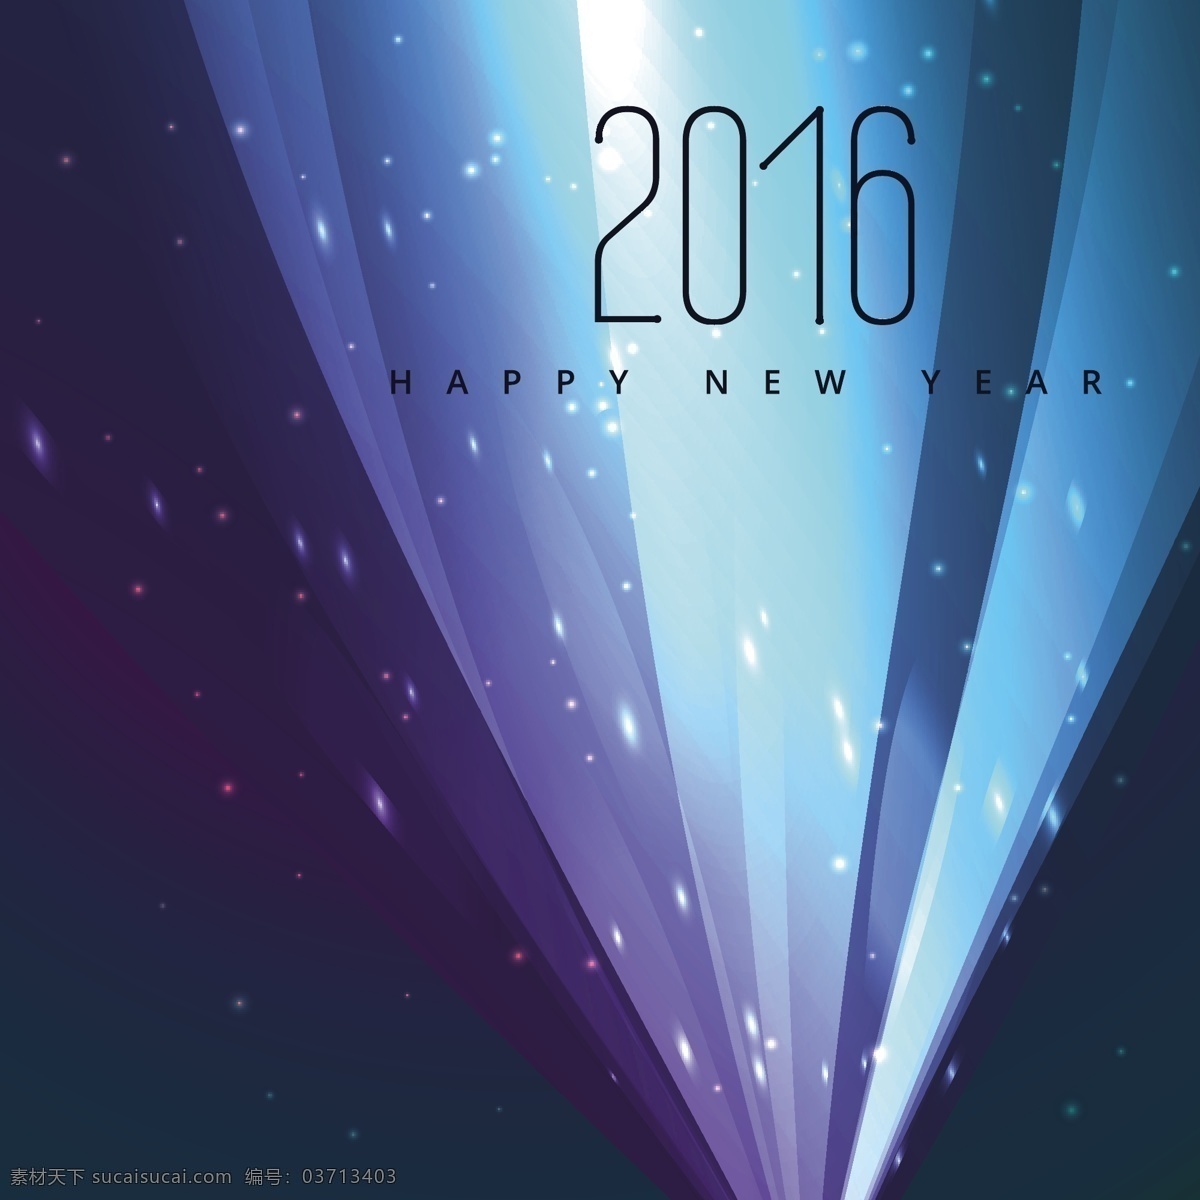 新年 快乐 霓虹灯 背景 宣传册 海报 卡片 新年快乐 新的一年里 光 冬天 壁纸 庆典 新的事件 节日 丰富多彩 2016 背景虚化 闪耀 多彩的背景 青色 天蓝色